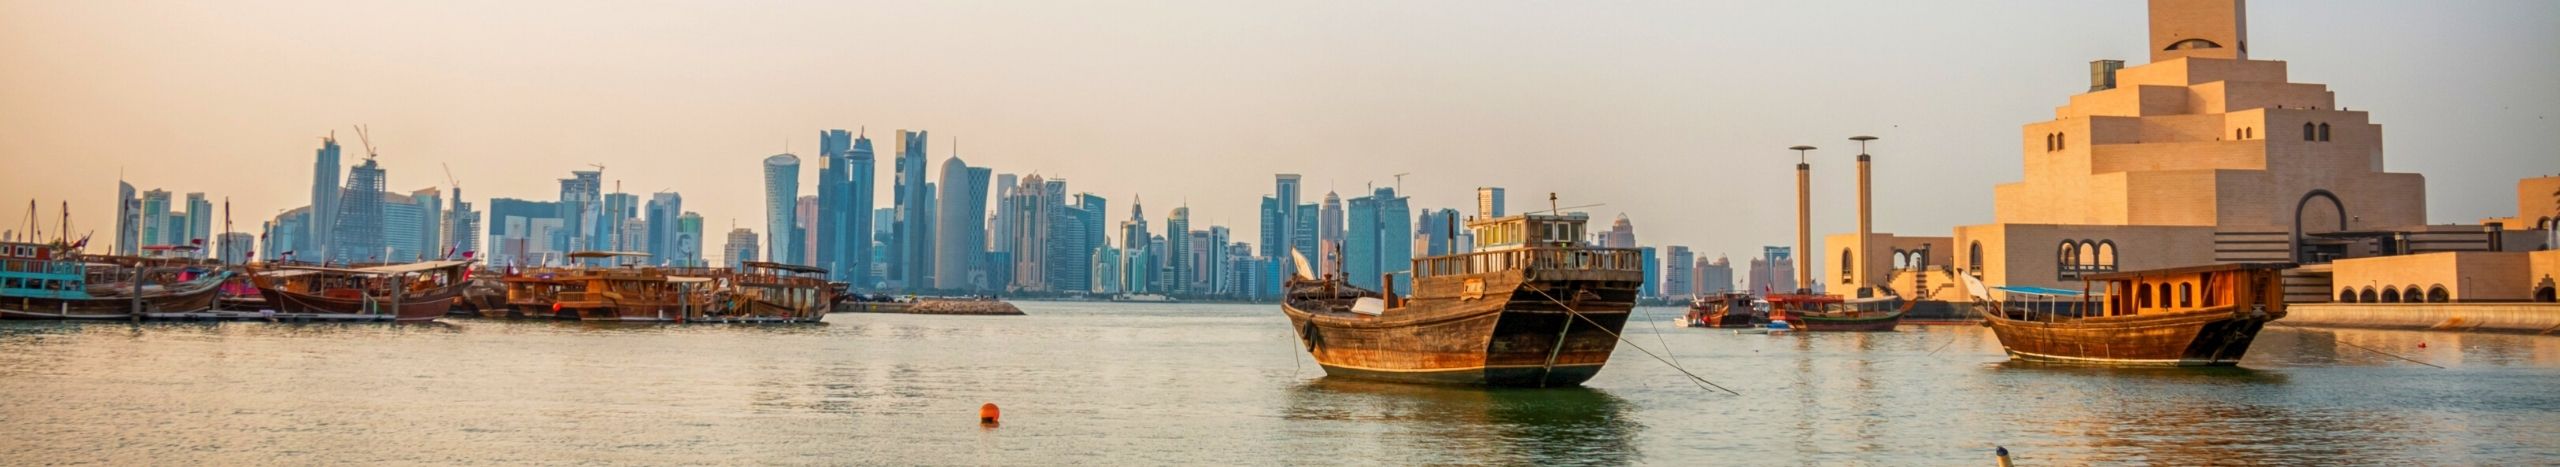 9 coisas que não se deve fazer em uma viagem para o Qatar